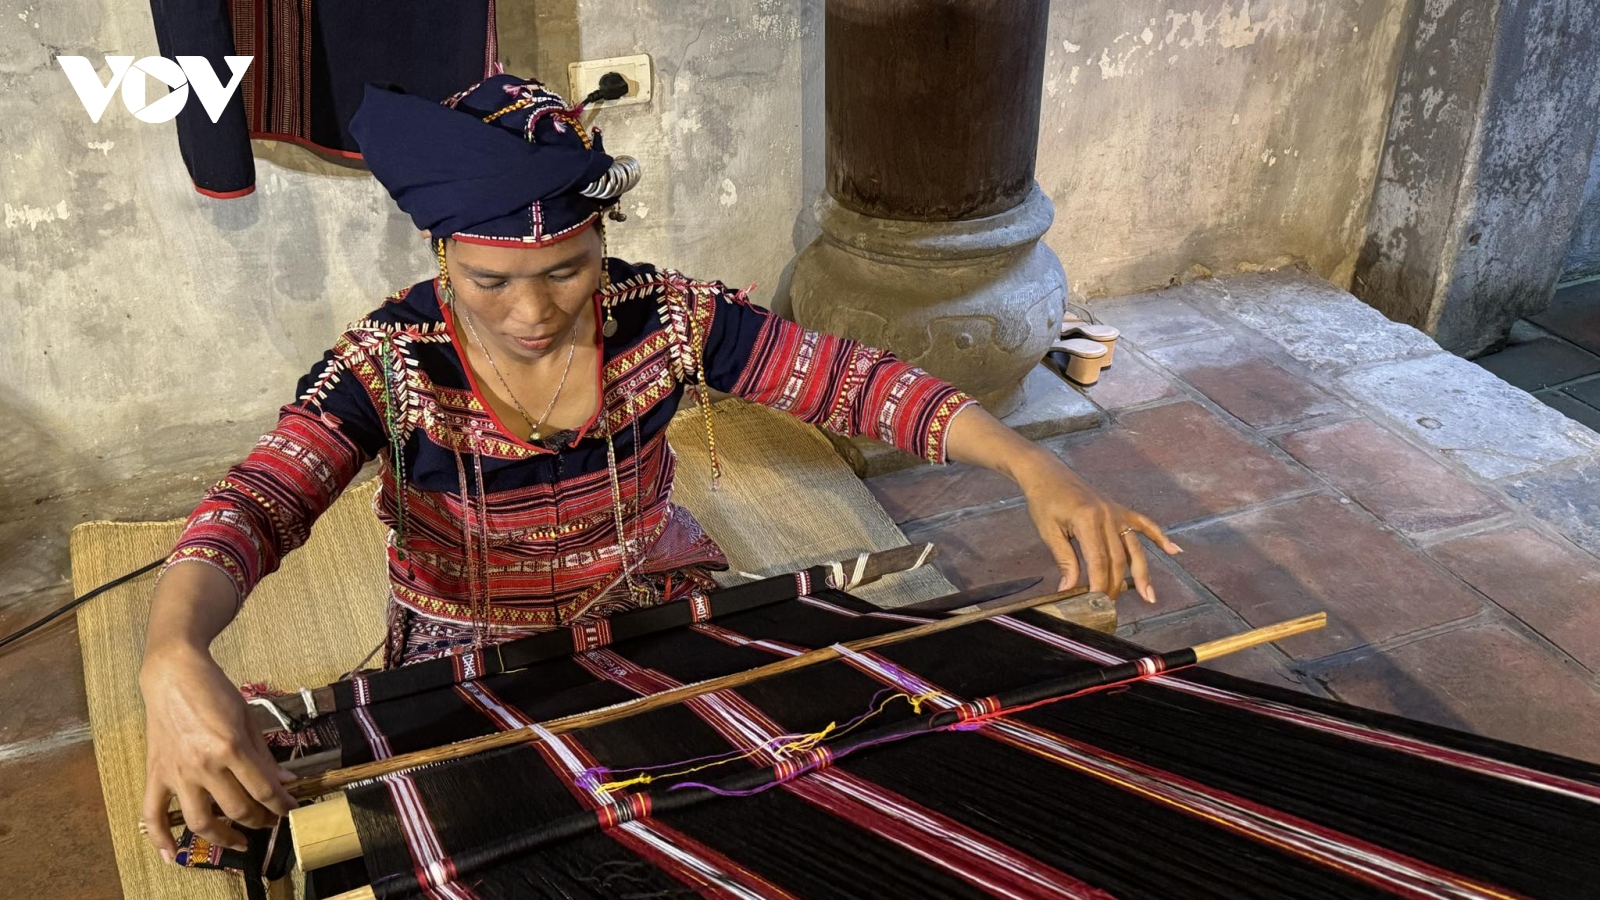 Thổ cẩm Xí Thoại, Phú Yên- Nét đẹp truyền thống làng nghề